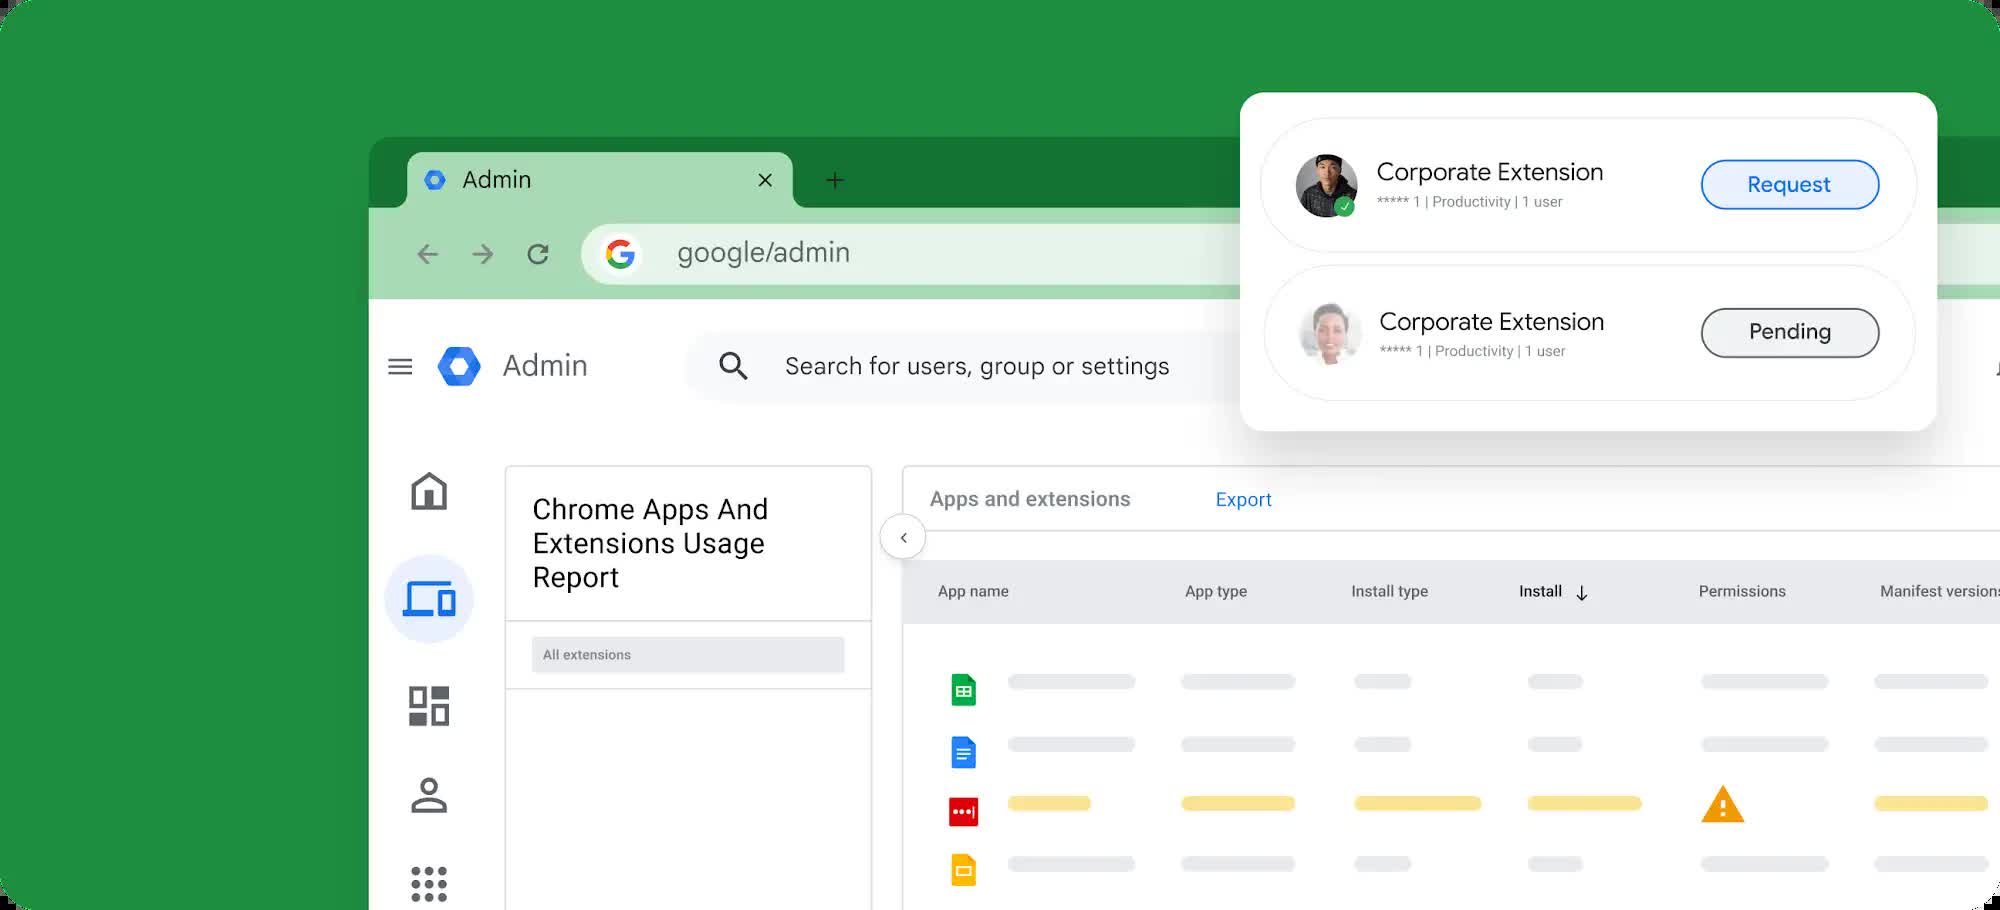 Google lance Chrome Enterprise Premium, navigateur payant doté fonctionnalités sécurité avancées